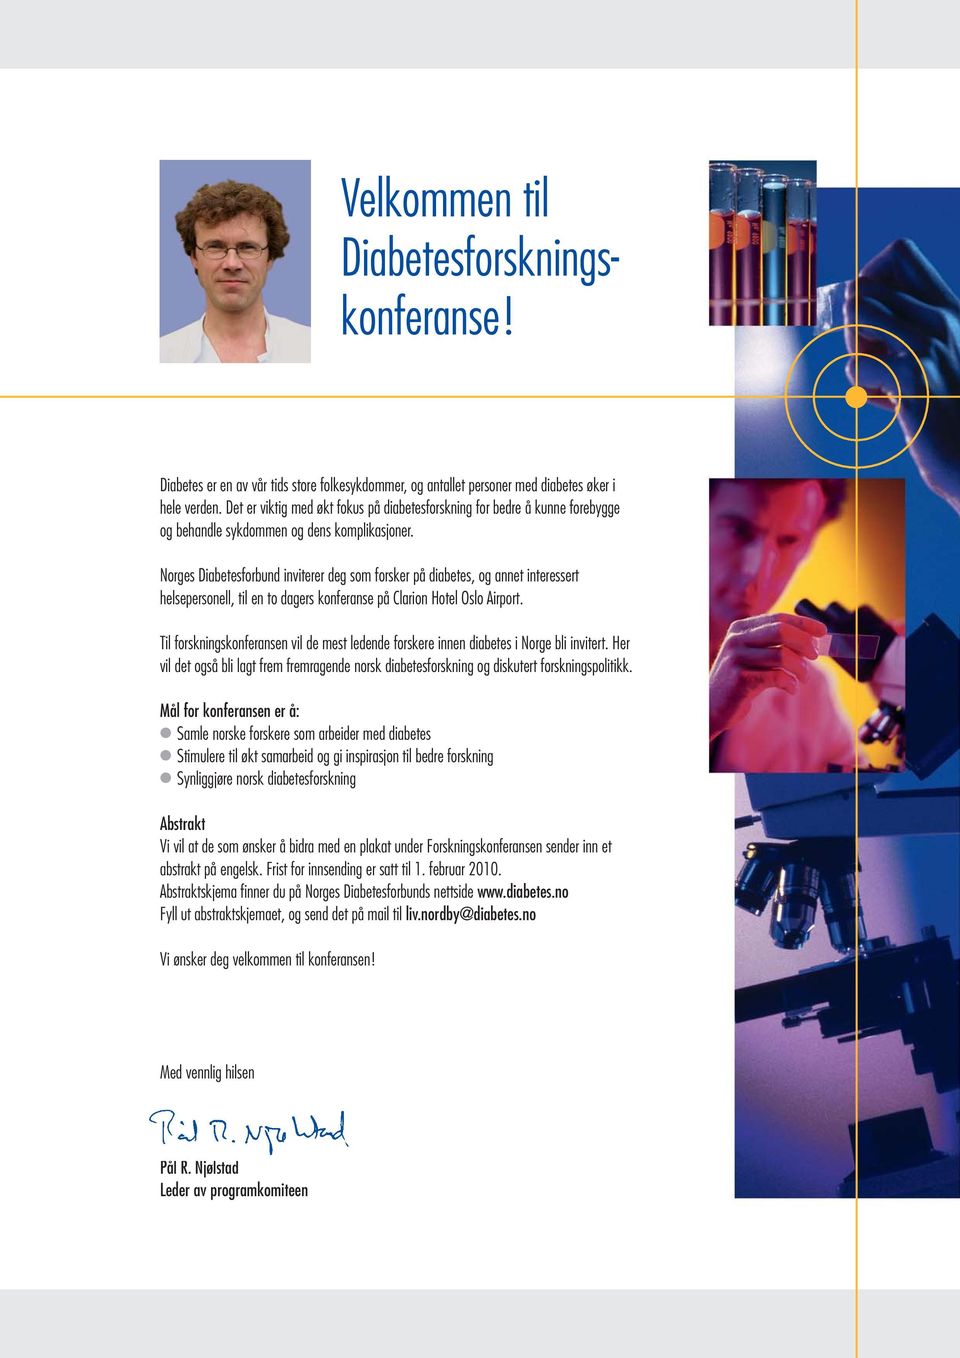 Norges Diabetesforbund inviterer deg som forsker på diabetes, og annet interessert helsepersonell, til en to dagers konferanse på Clarion Hotel Oslo Airport.